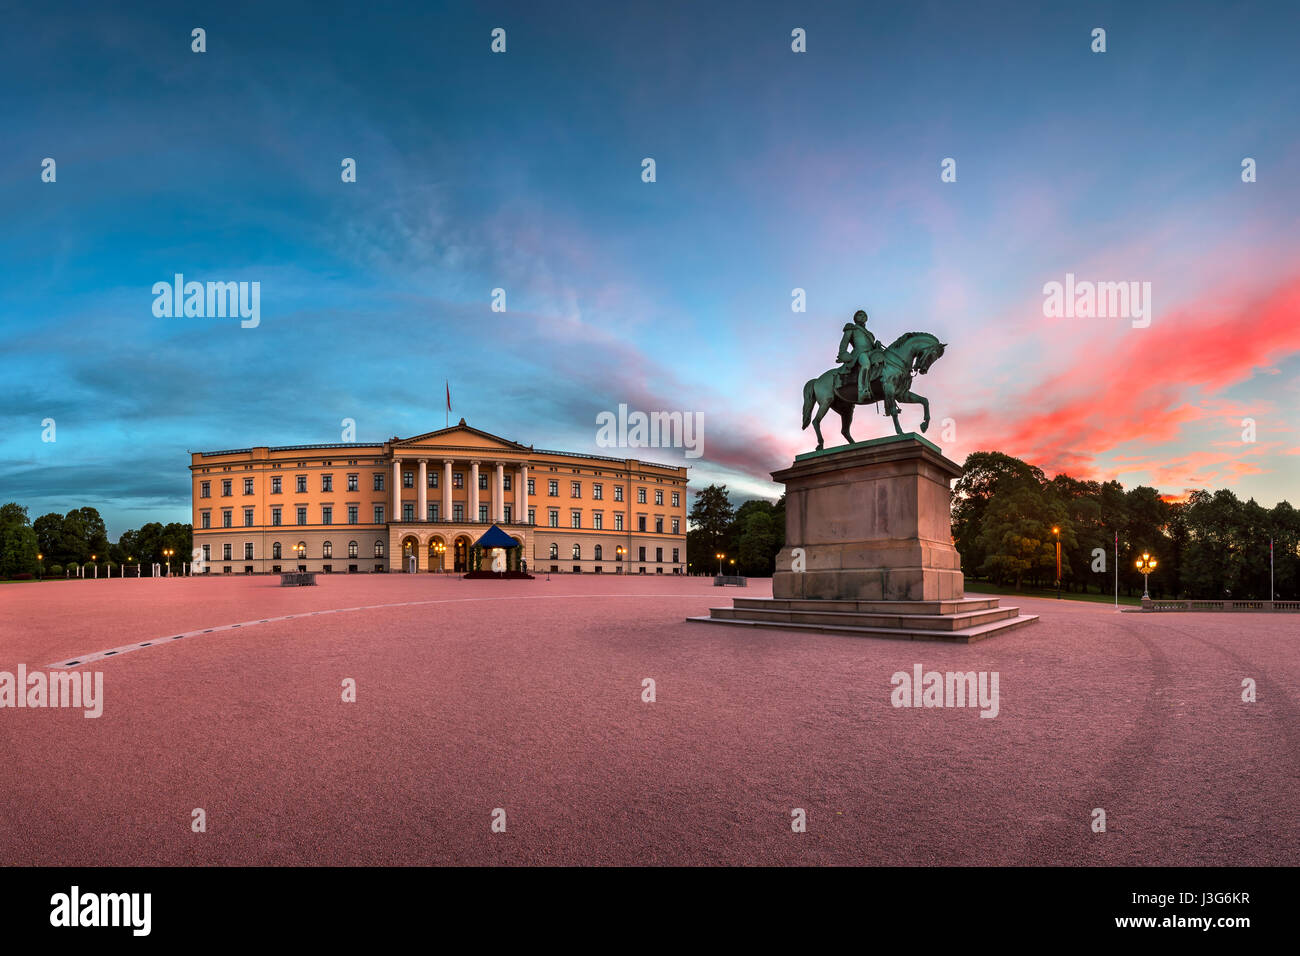 Panorama de la Palais Royal et Statue du Roi Karl Johan au lever du soleil, Oslo, Norvège Banque D'Images